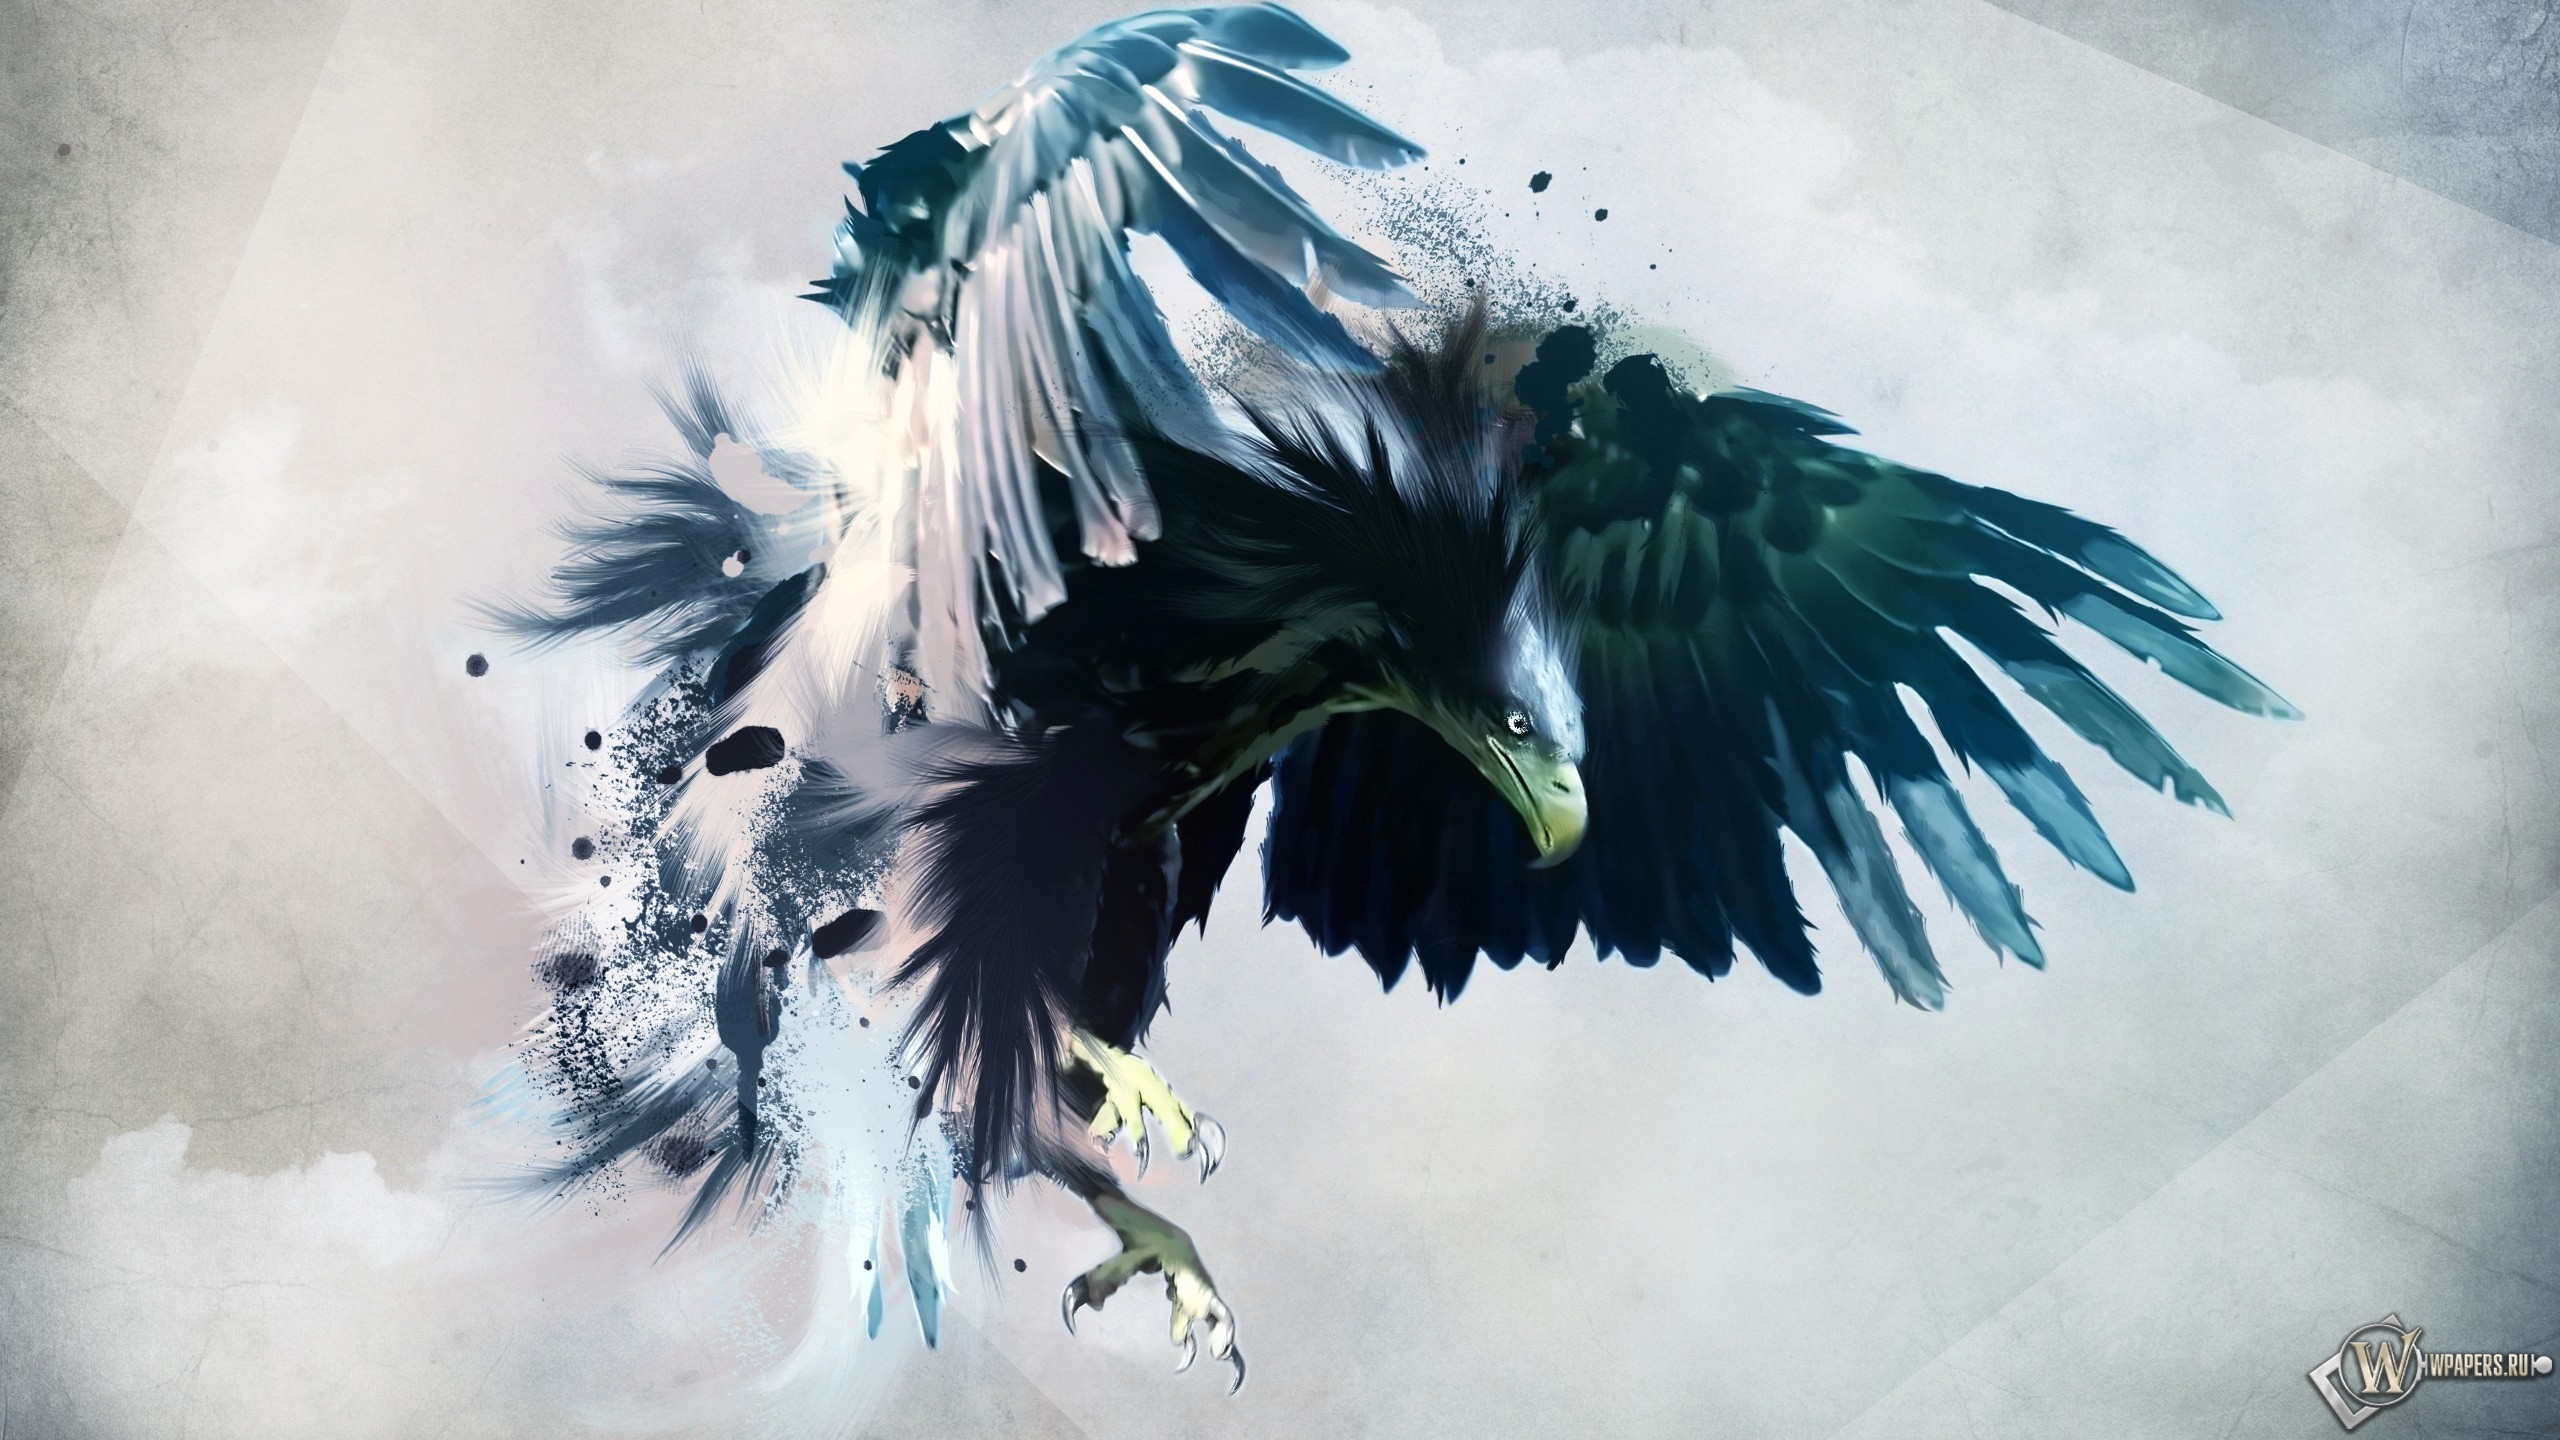 Artistic eagle 2560x1440